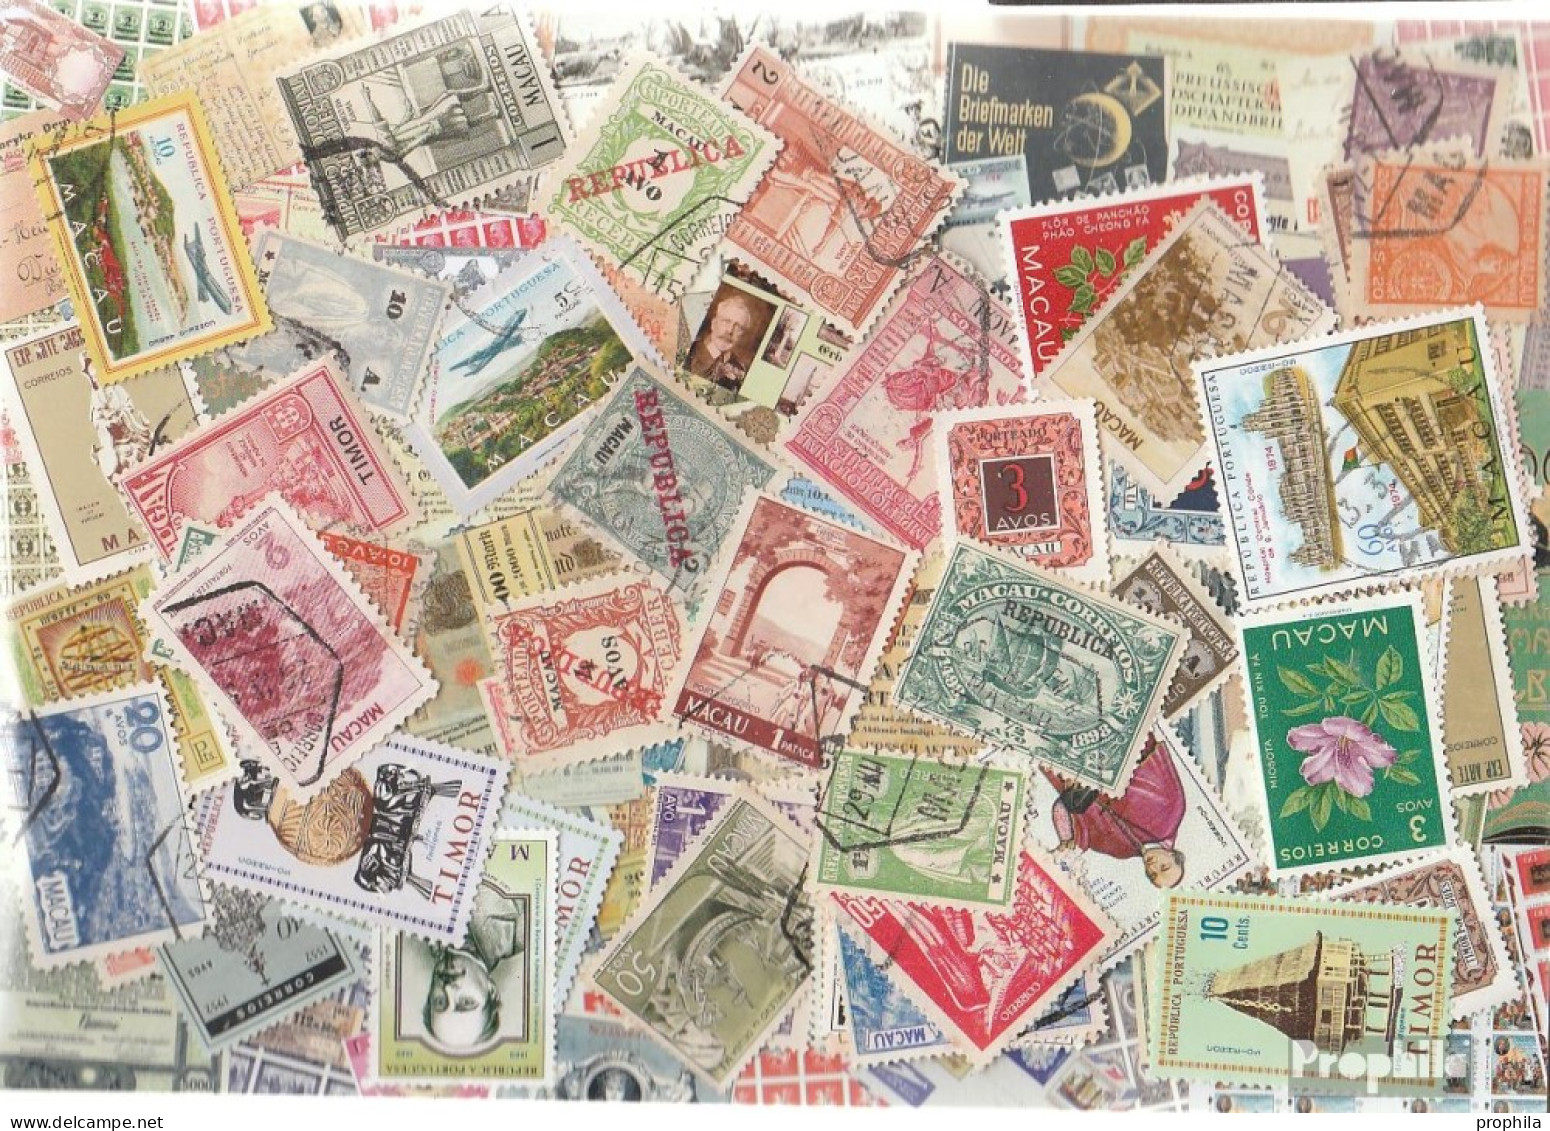 Macau 200 Verschiedene Marken - Collections, Lots & Series